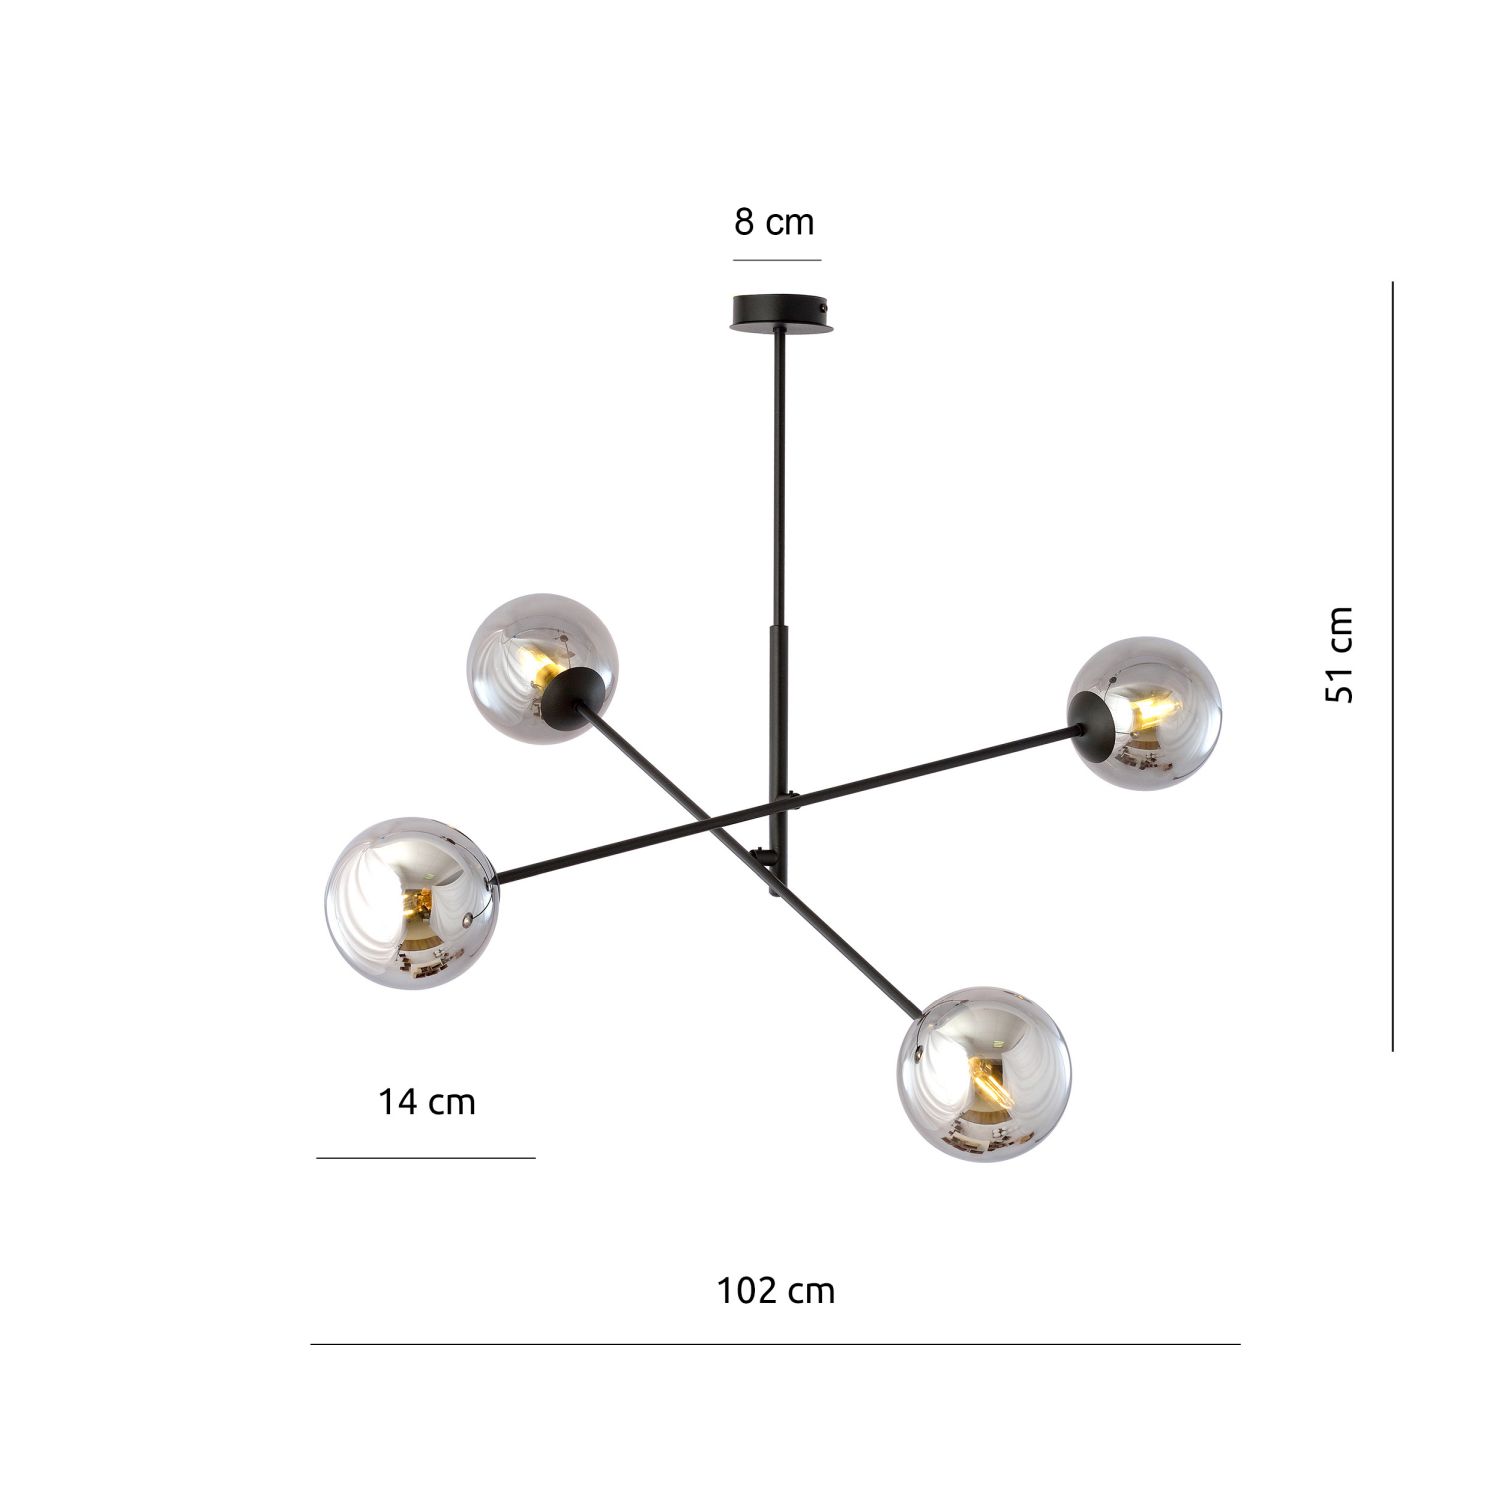 Deckenlampe schwenkbar L: 102 cm E14 4-flammig Kugelschirm